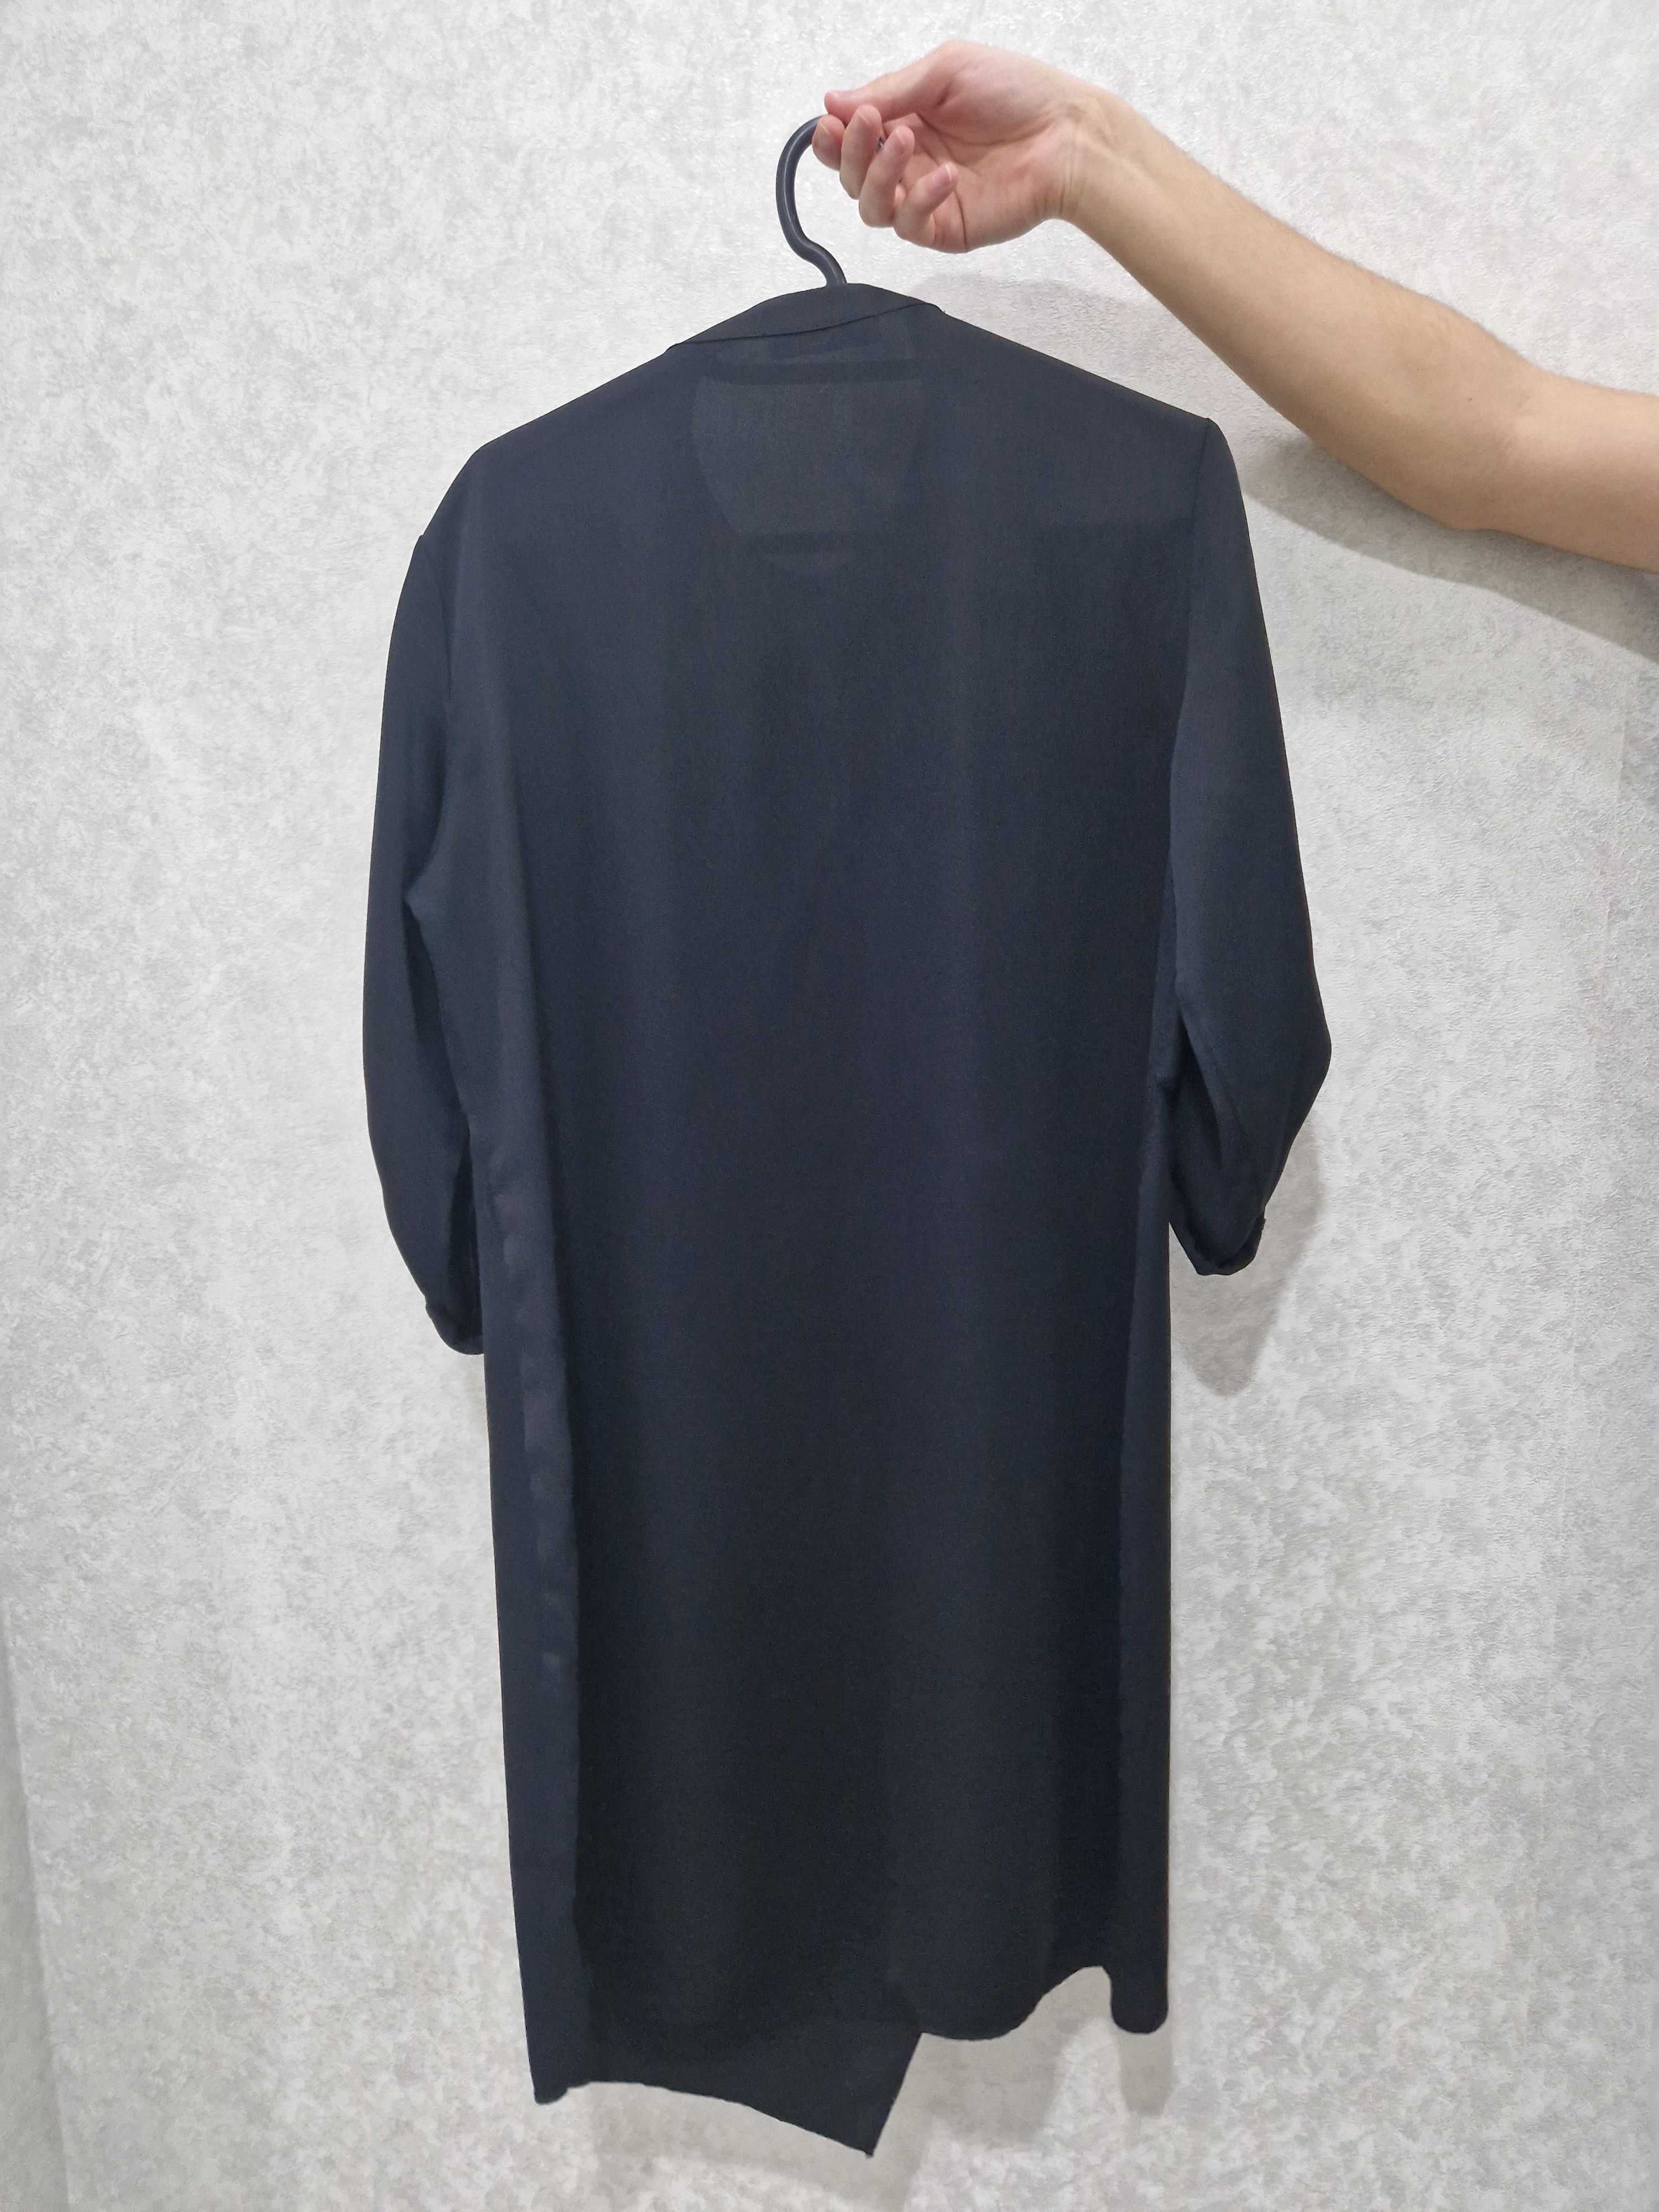 Продается женское платье, цена 7000тг СКИДКА!!!